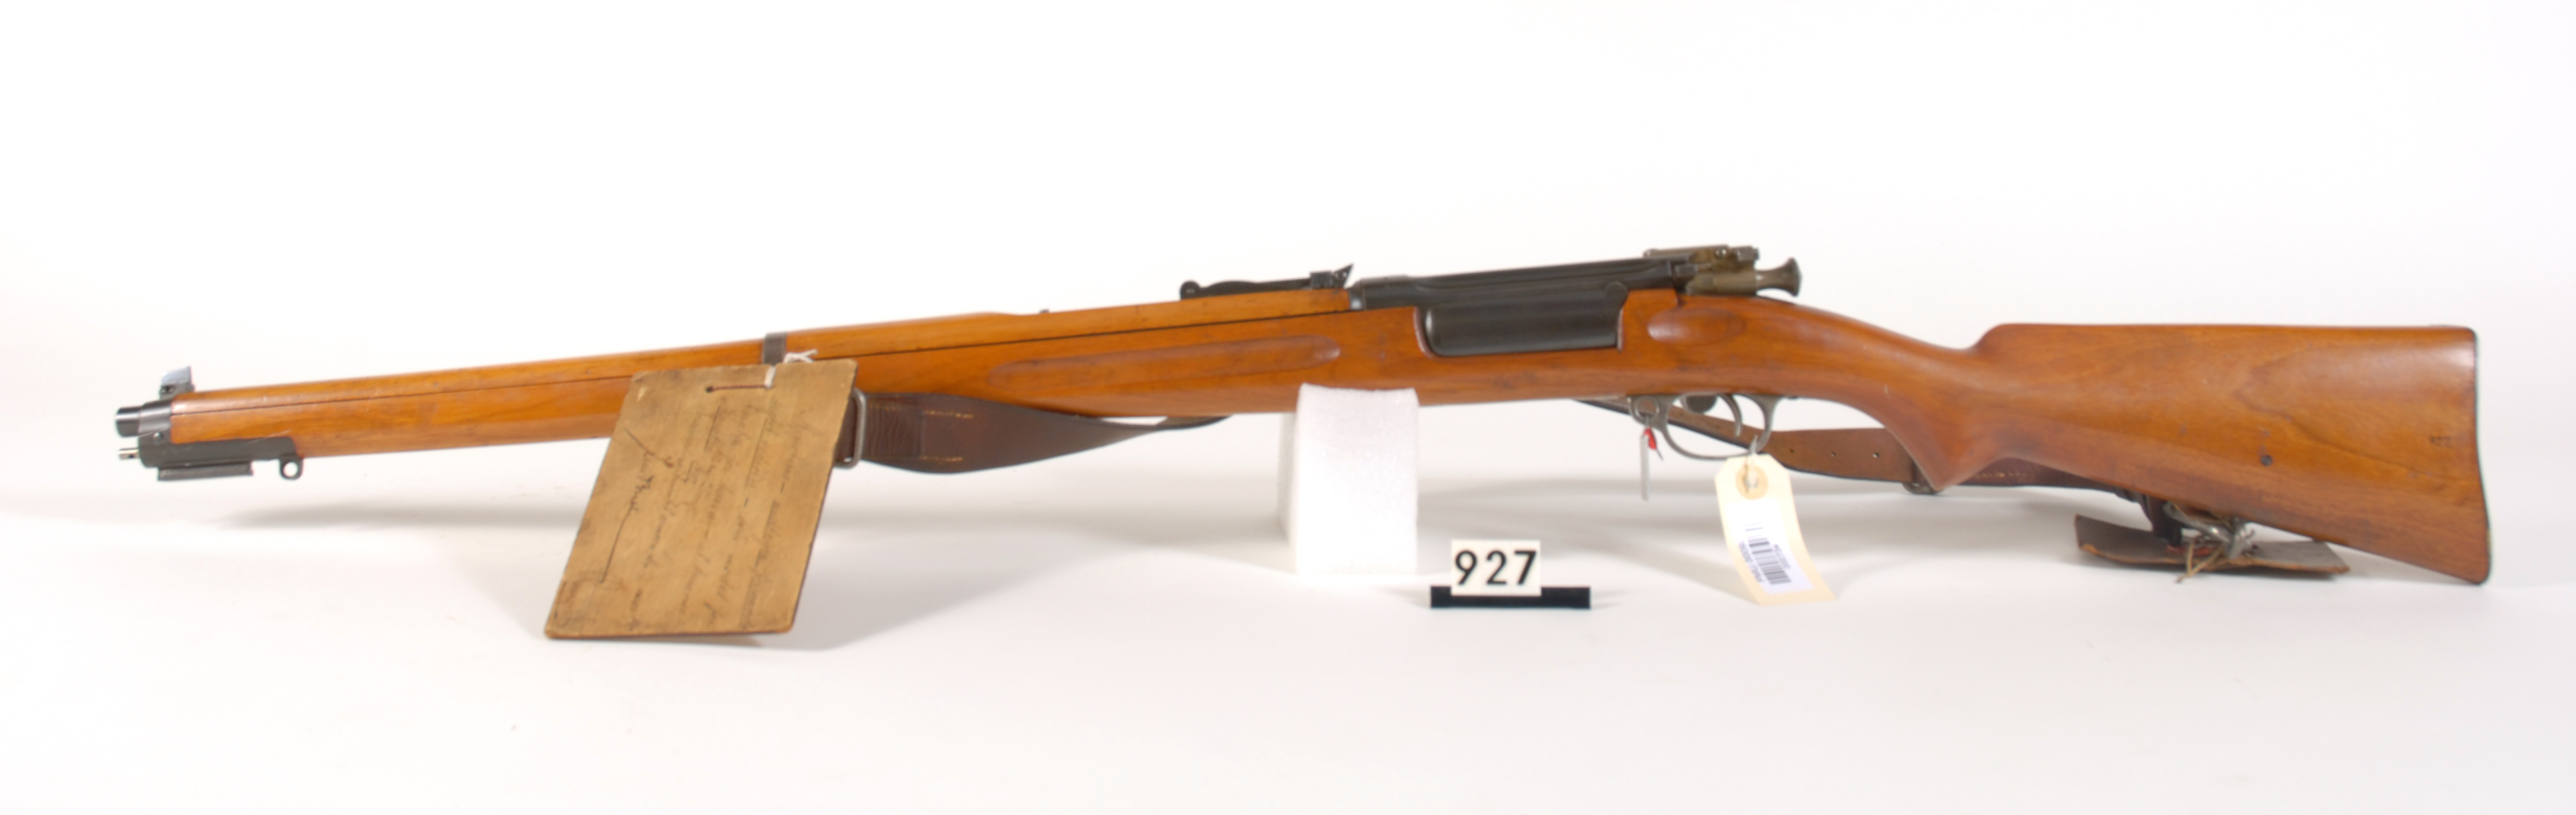 ./guns/rifle/bilder/Rifle-Kongsberg-Krag-M1912-FMU.000927d.jpg